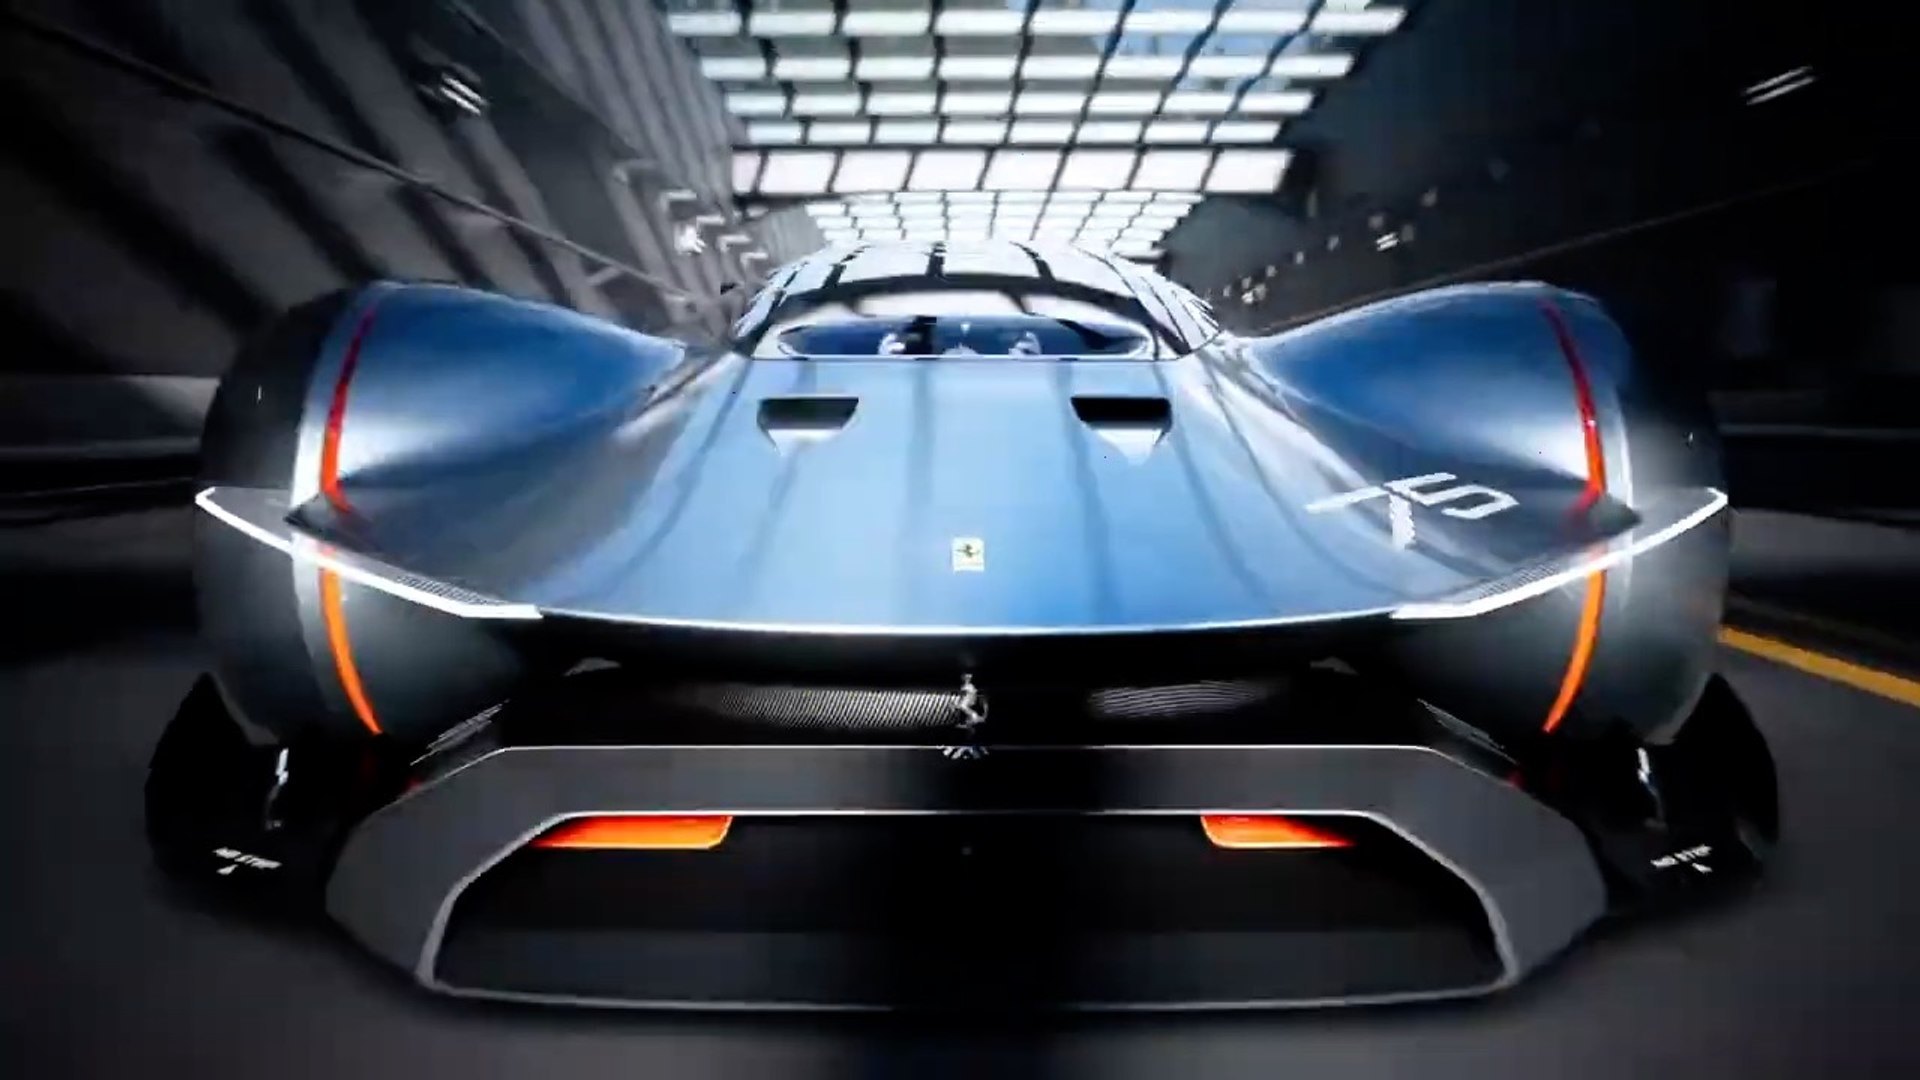 Gran Turismo 25th Anniversary Trailer